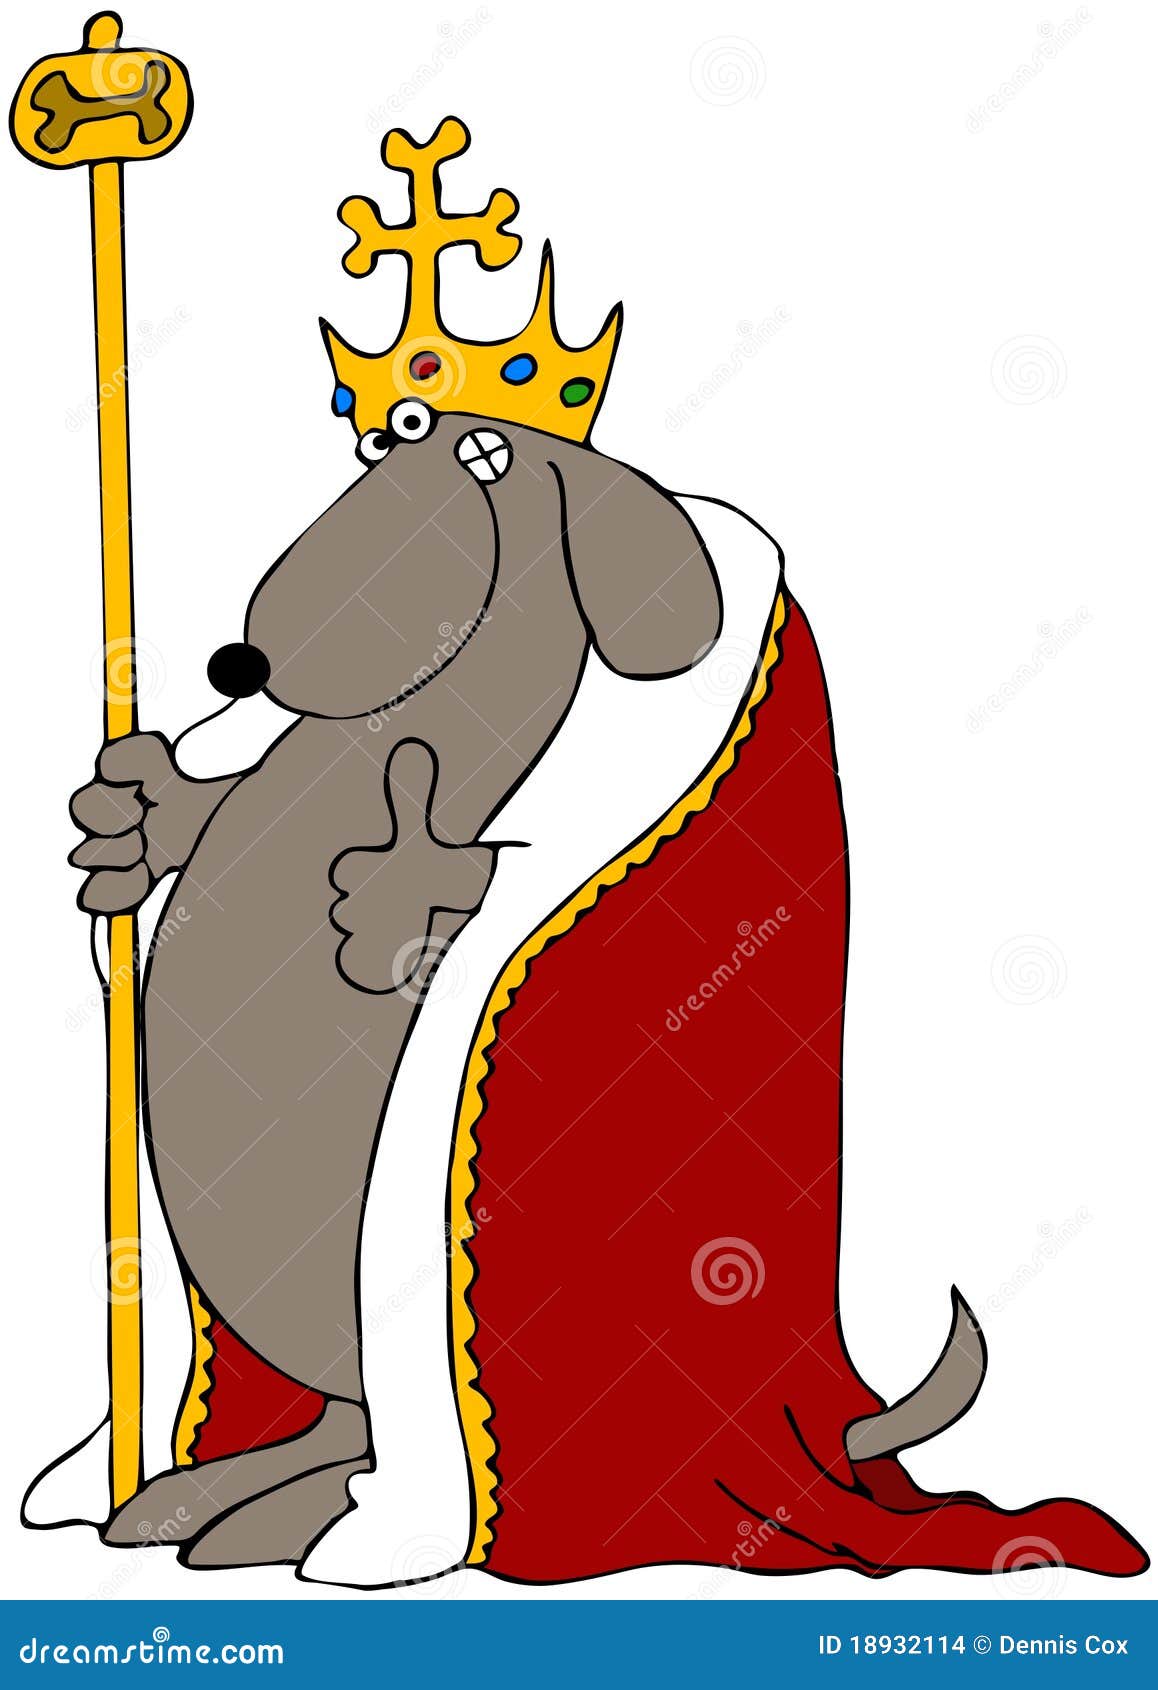 Dog King Stock Images - Image: 18932114